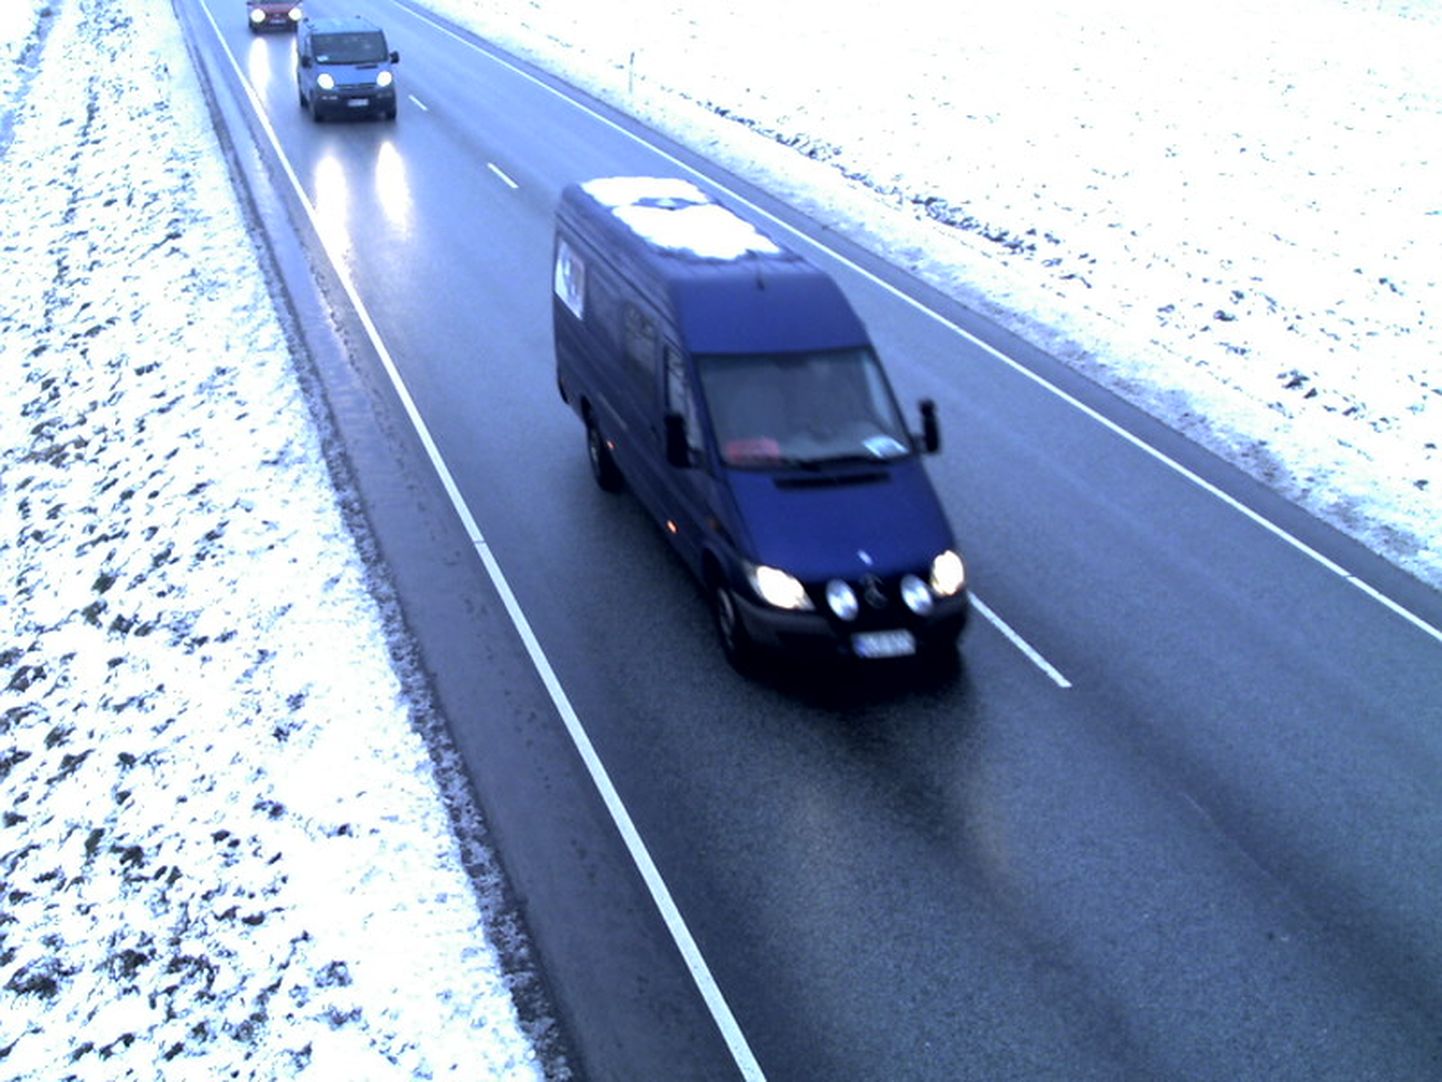 Räägu teekaamera pilt Tallinna-Pärnu-Ikla maanteel Pärnu Jaagupi lähedalt.